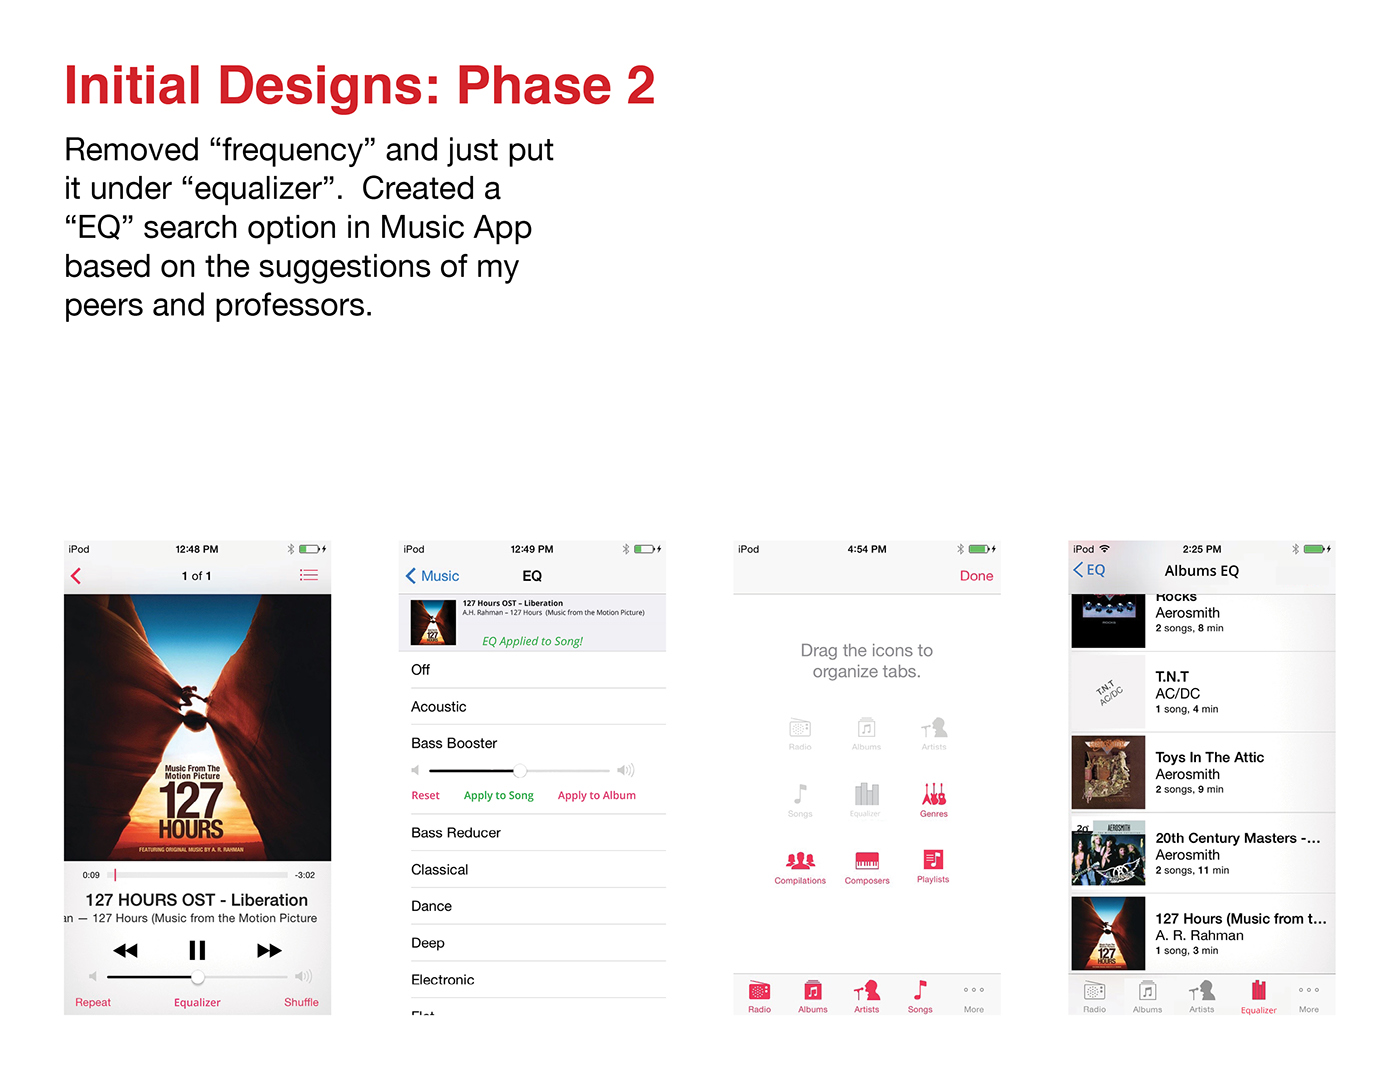 Adobe Portfolio apple ios iphone ipod user interface user experience Album design UI ux itunes michael Finneran enhancement app